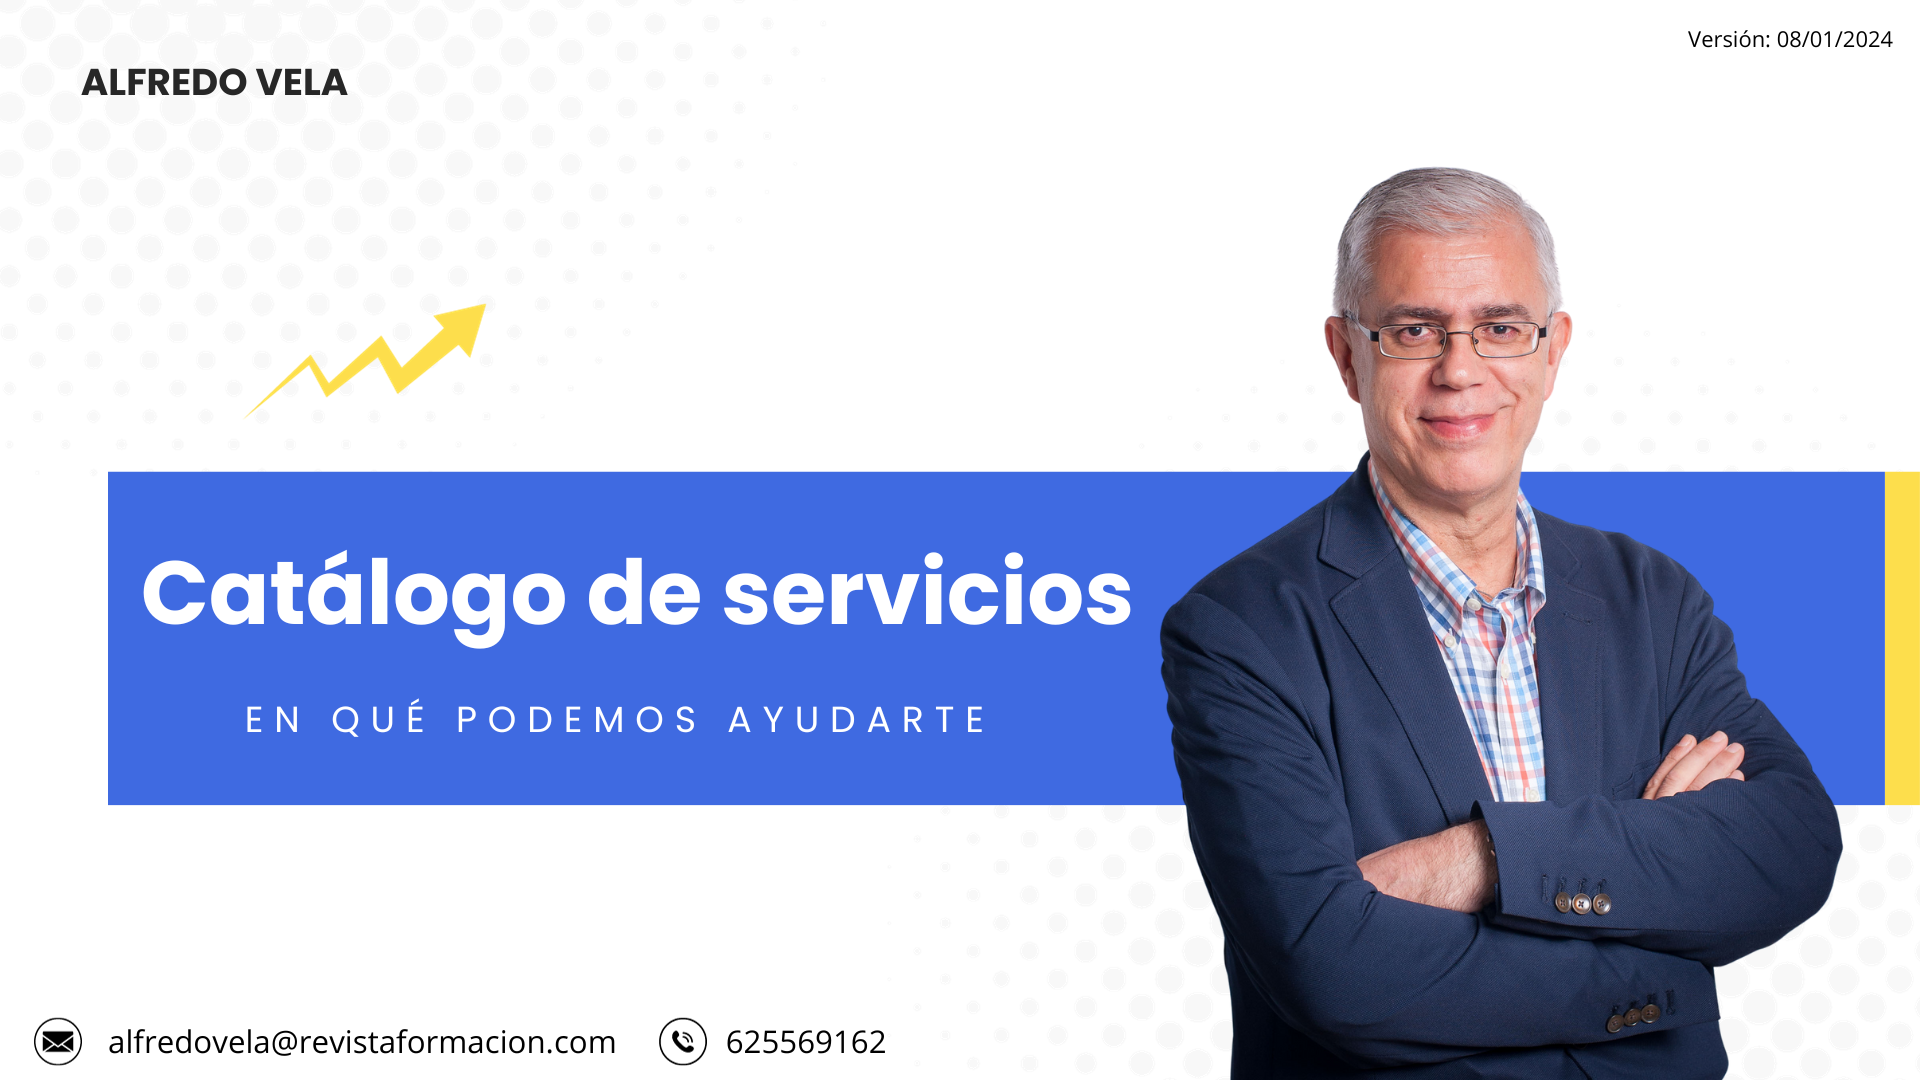 Version: 08/01/2024

ALFREDO VELA

Catalogo de servicios

EN QUE PODEMOS AYUDARTE

  

(=) alfredovela@revistaformacion.com © 625569162